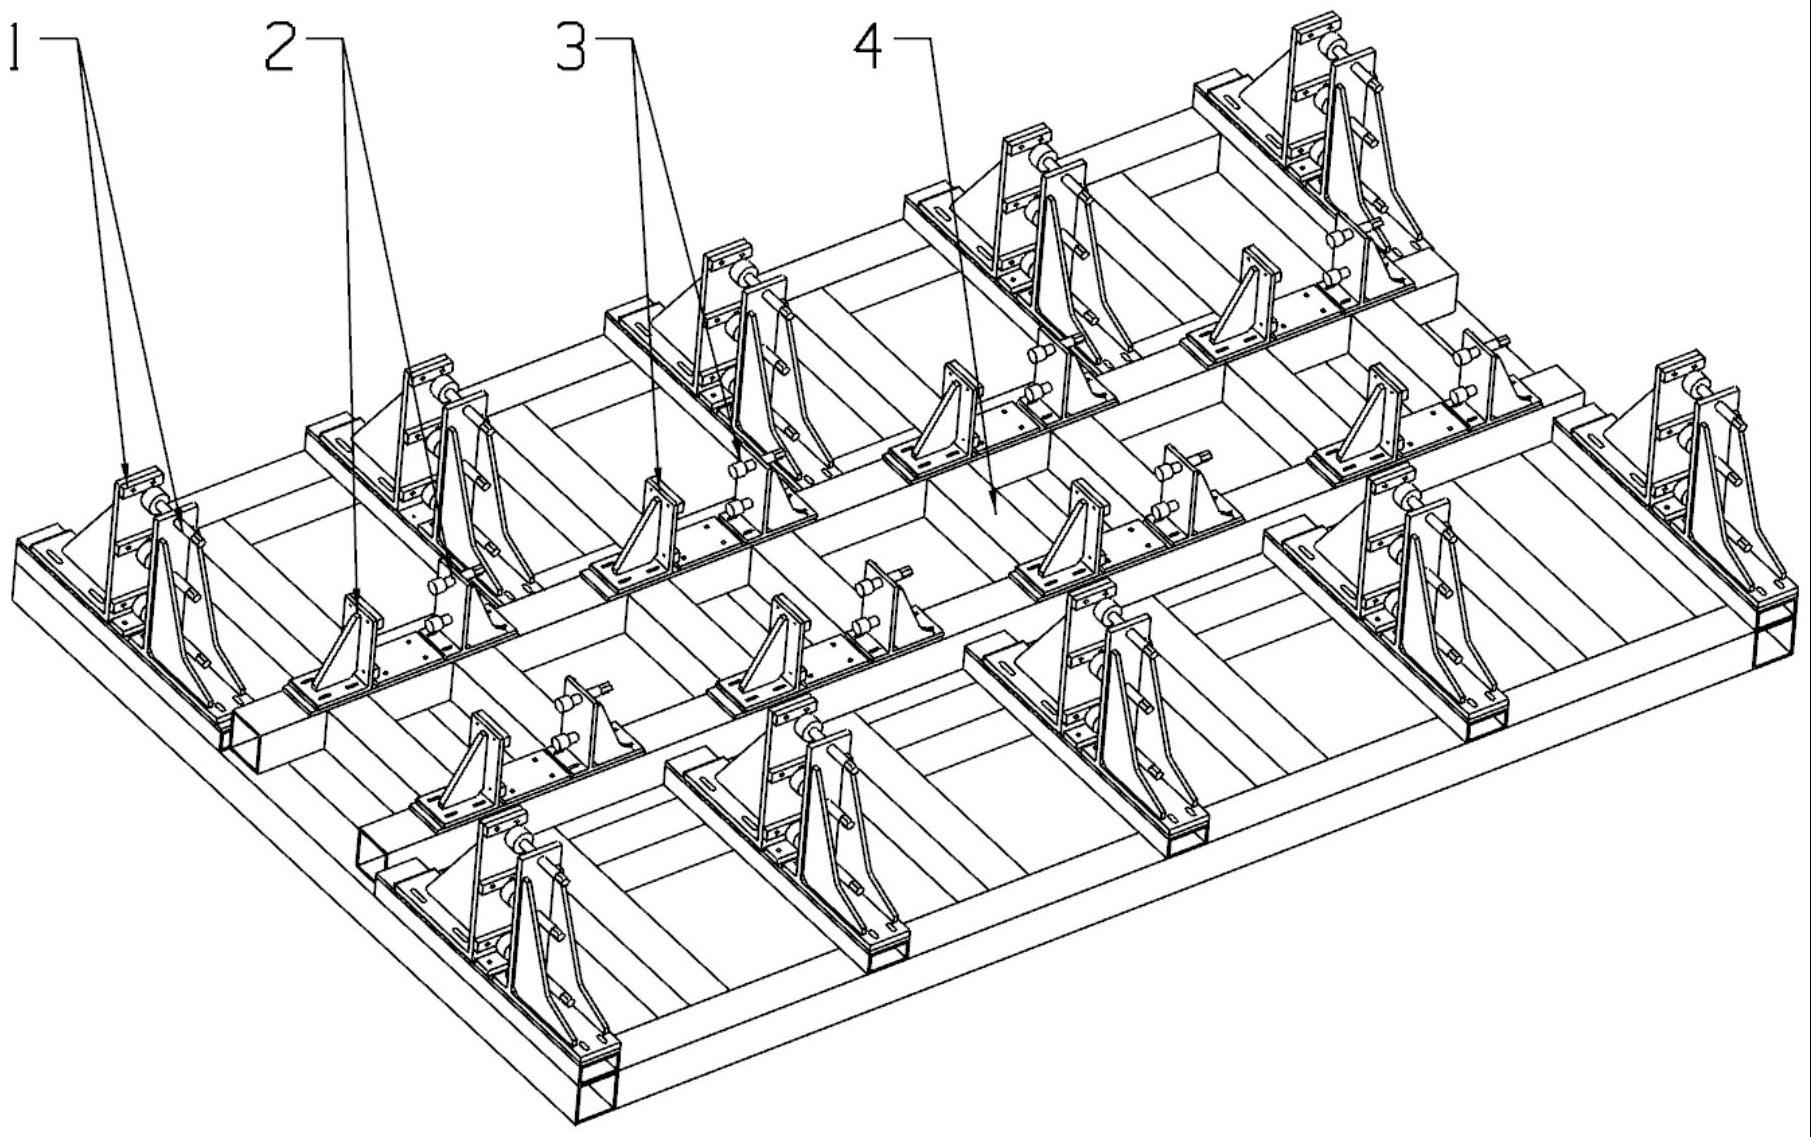 悬浮架构架的结构定位及焊接变形控制工装的制作方法